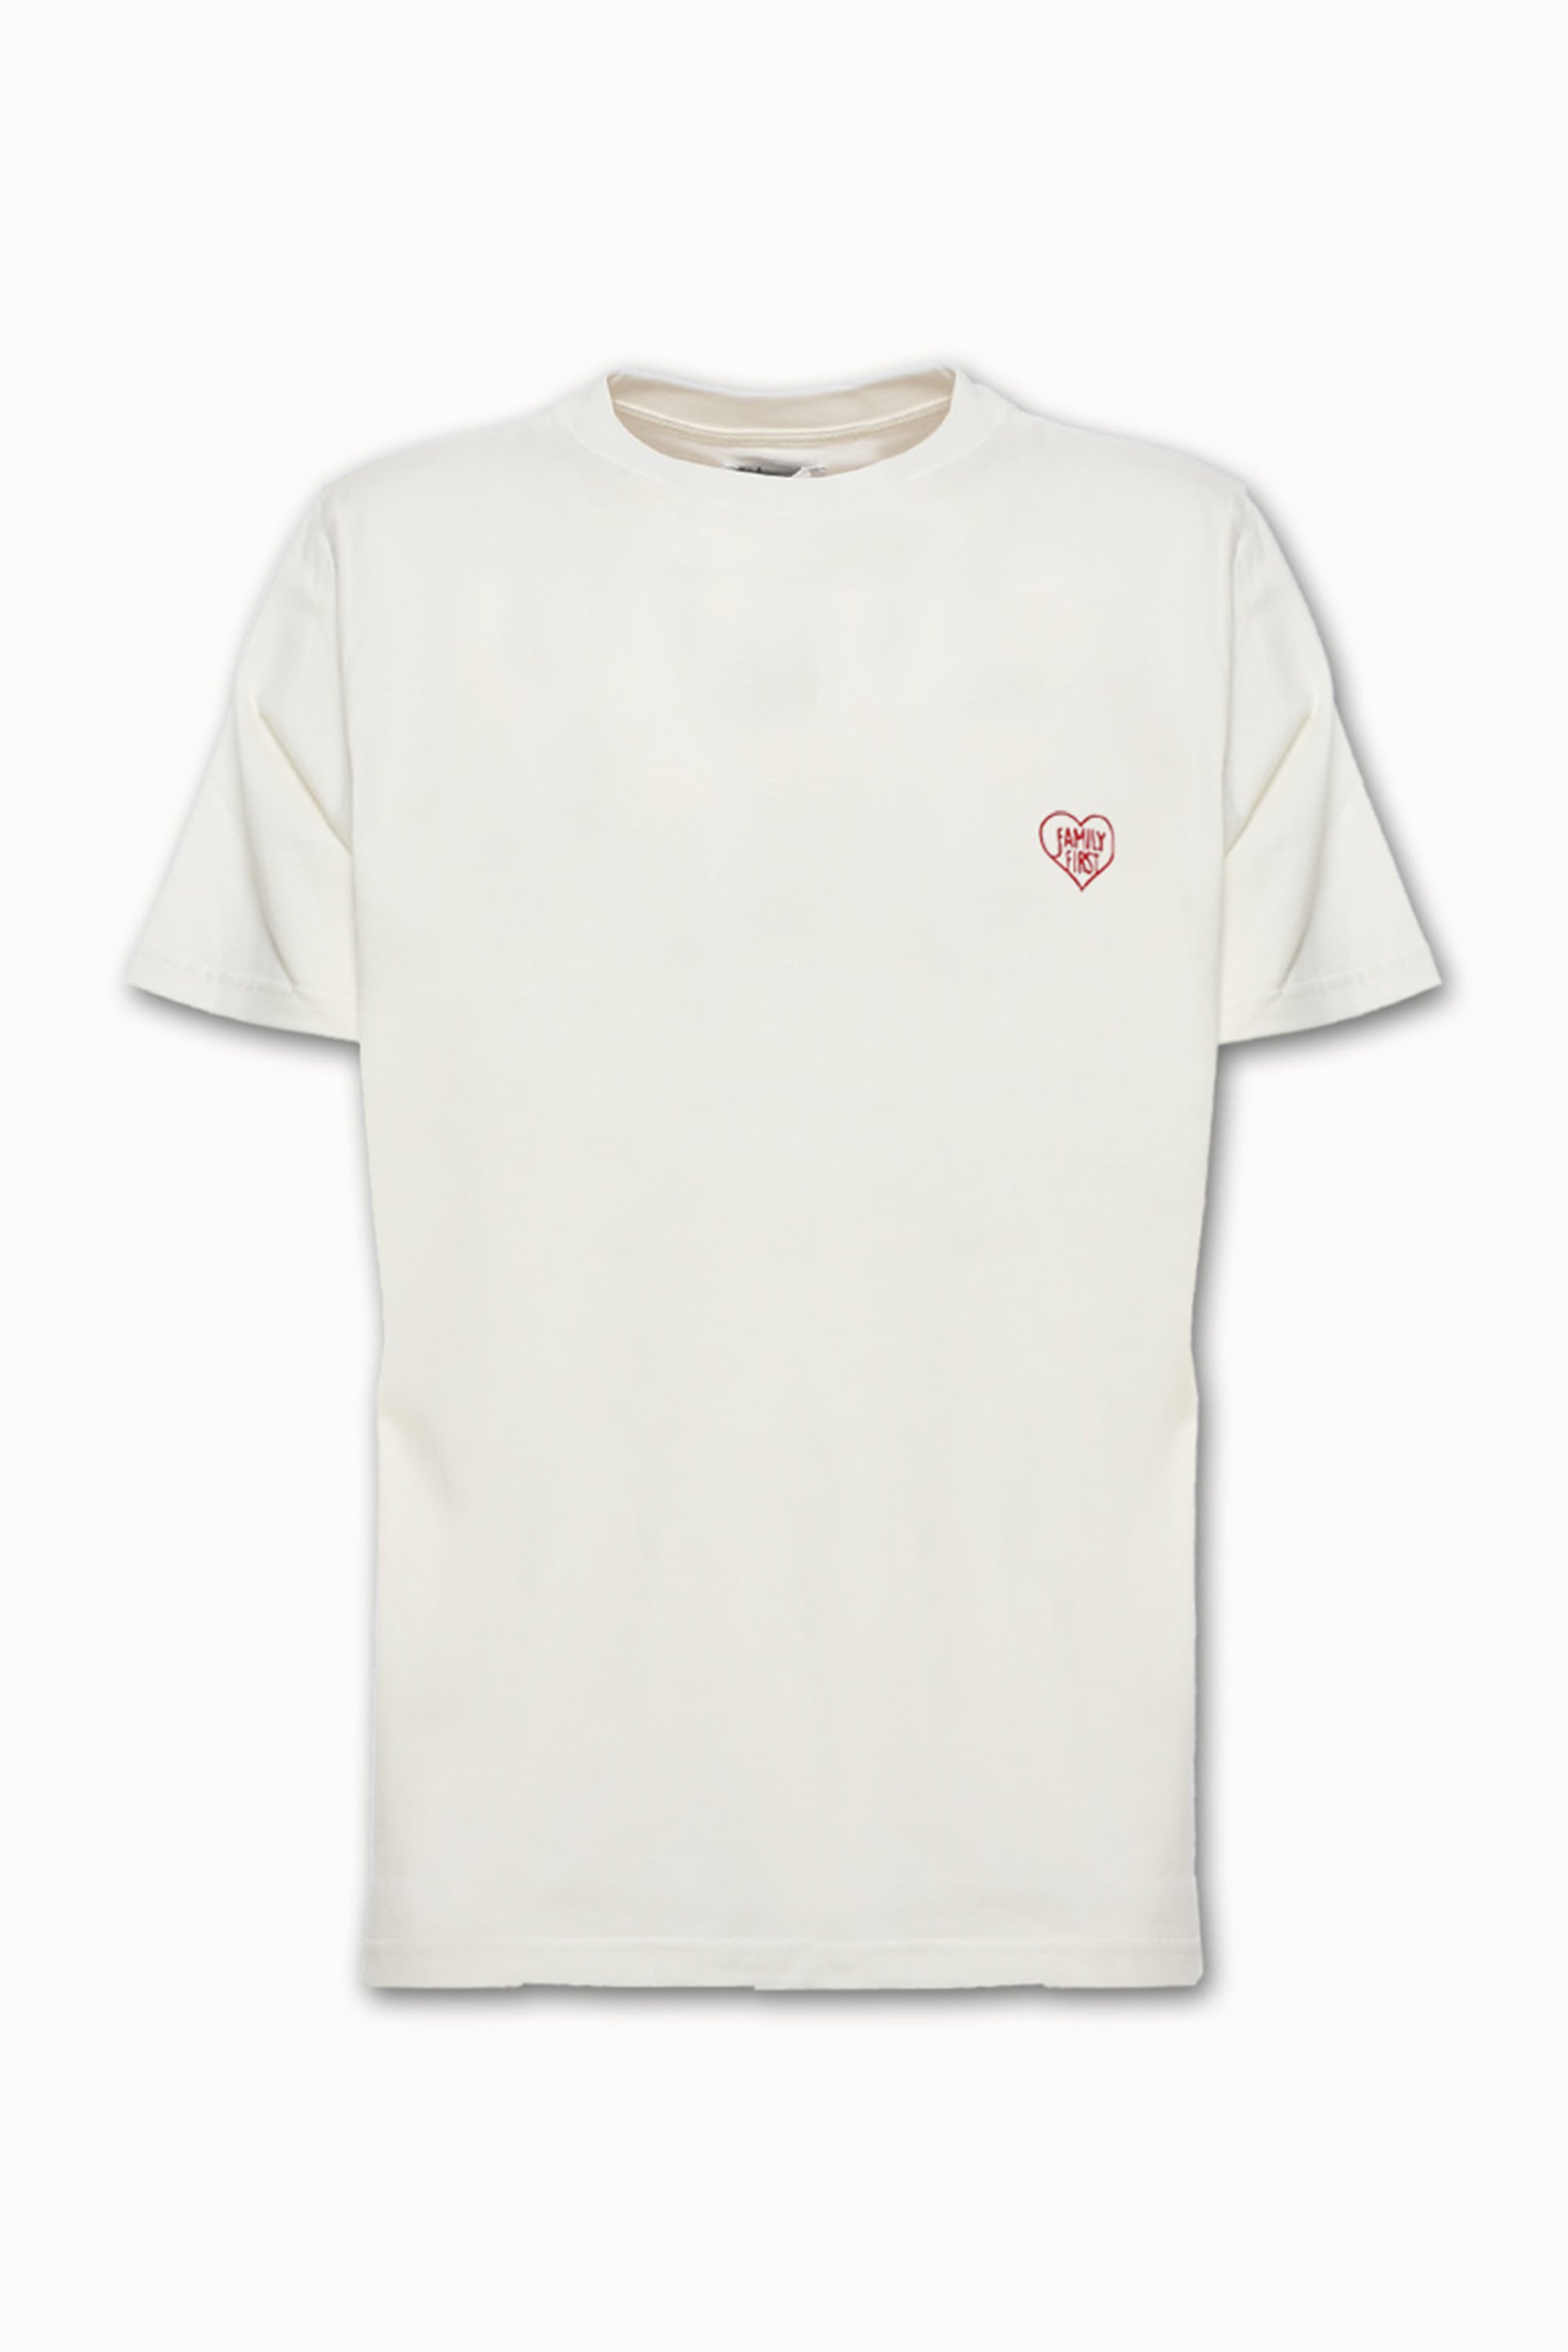 T-Shirt Heart